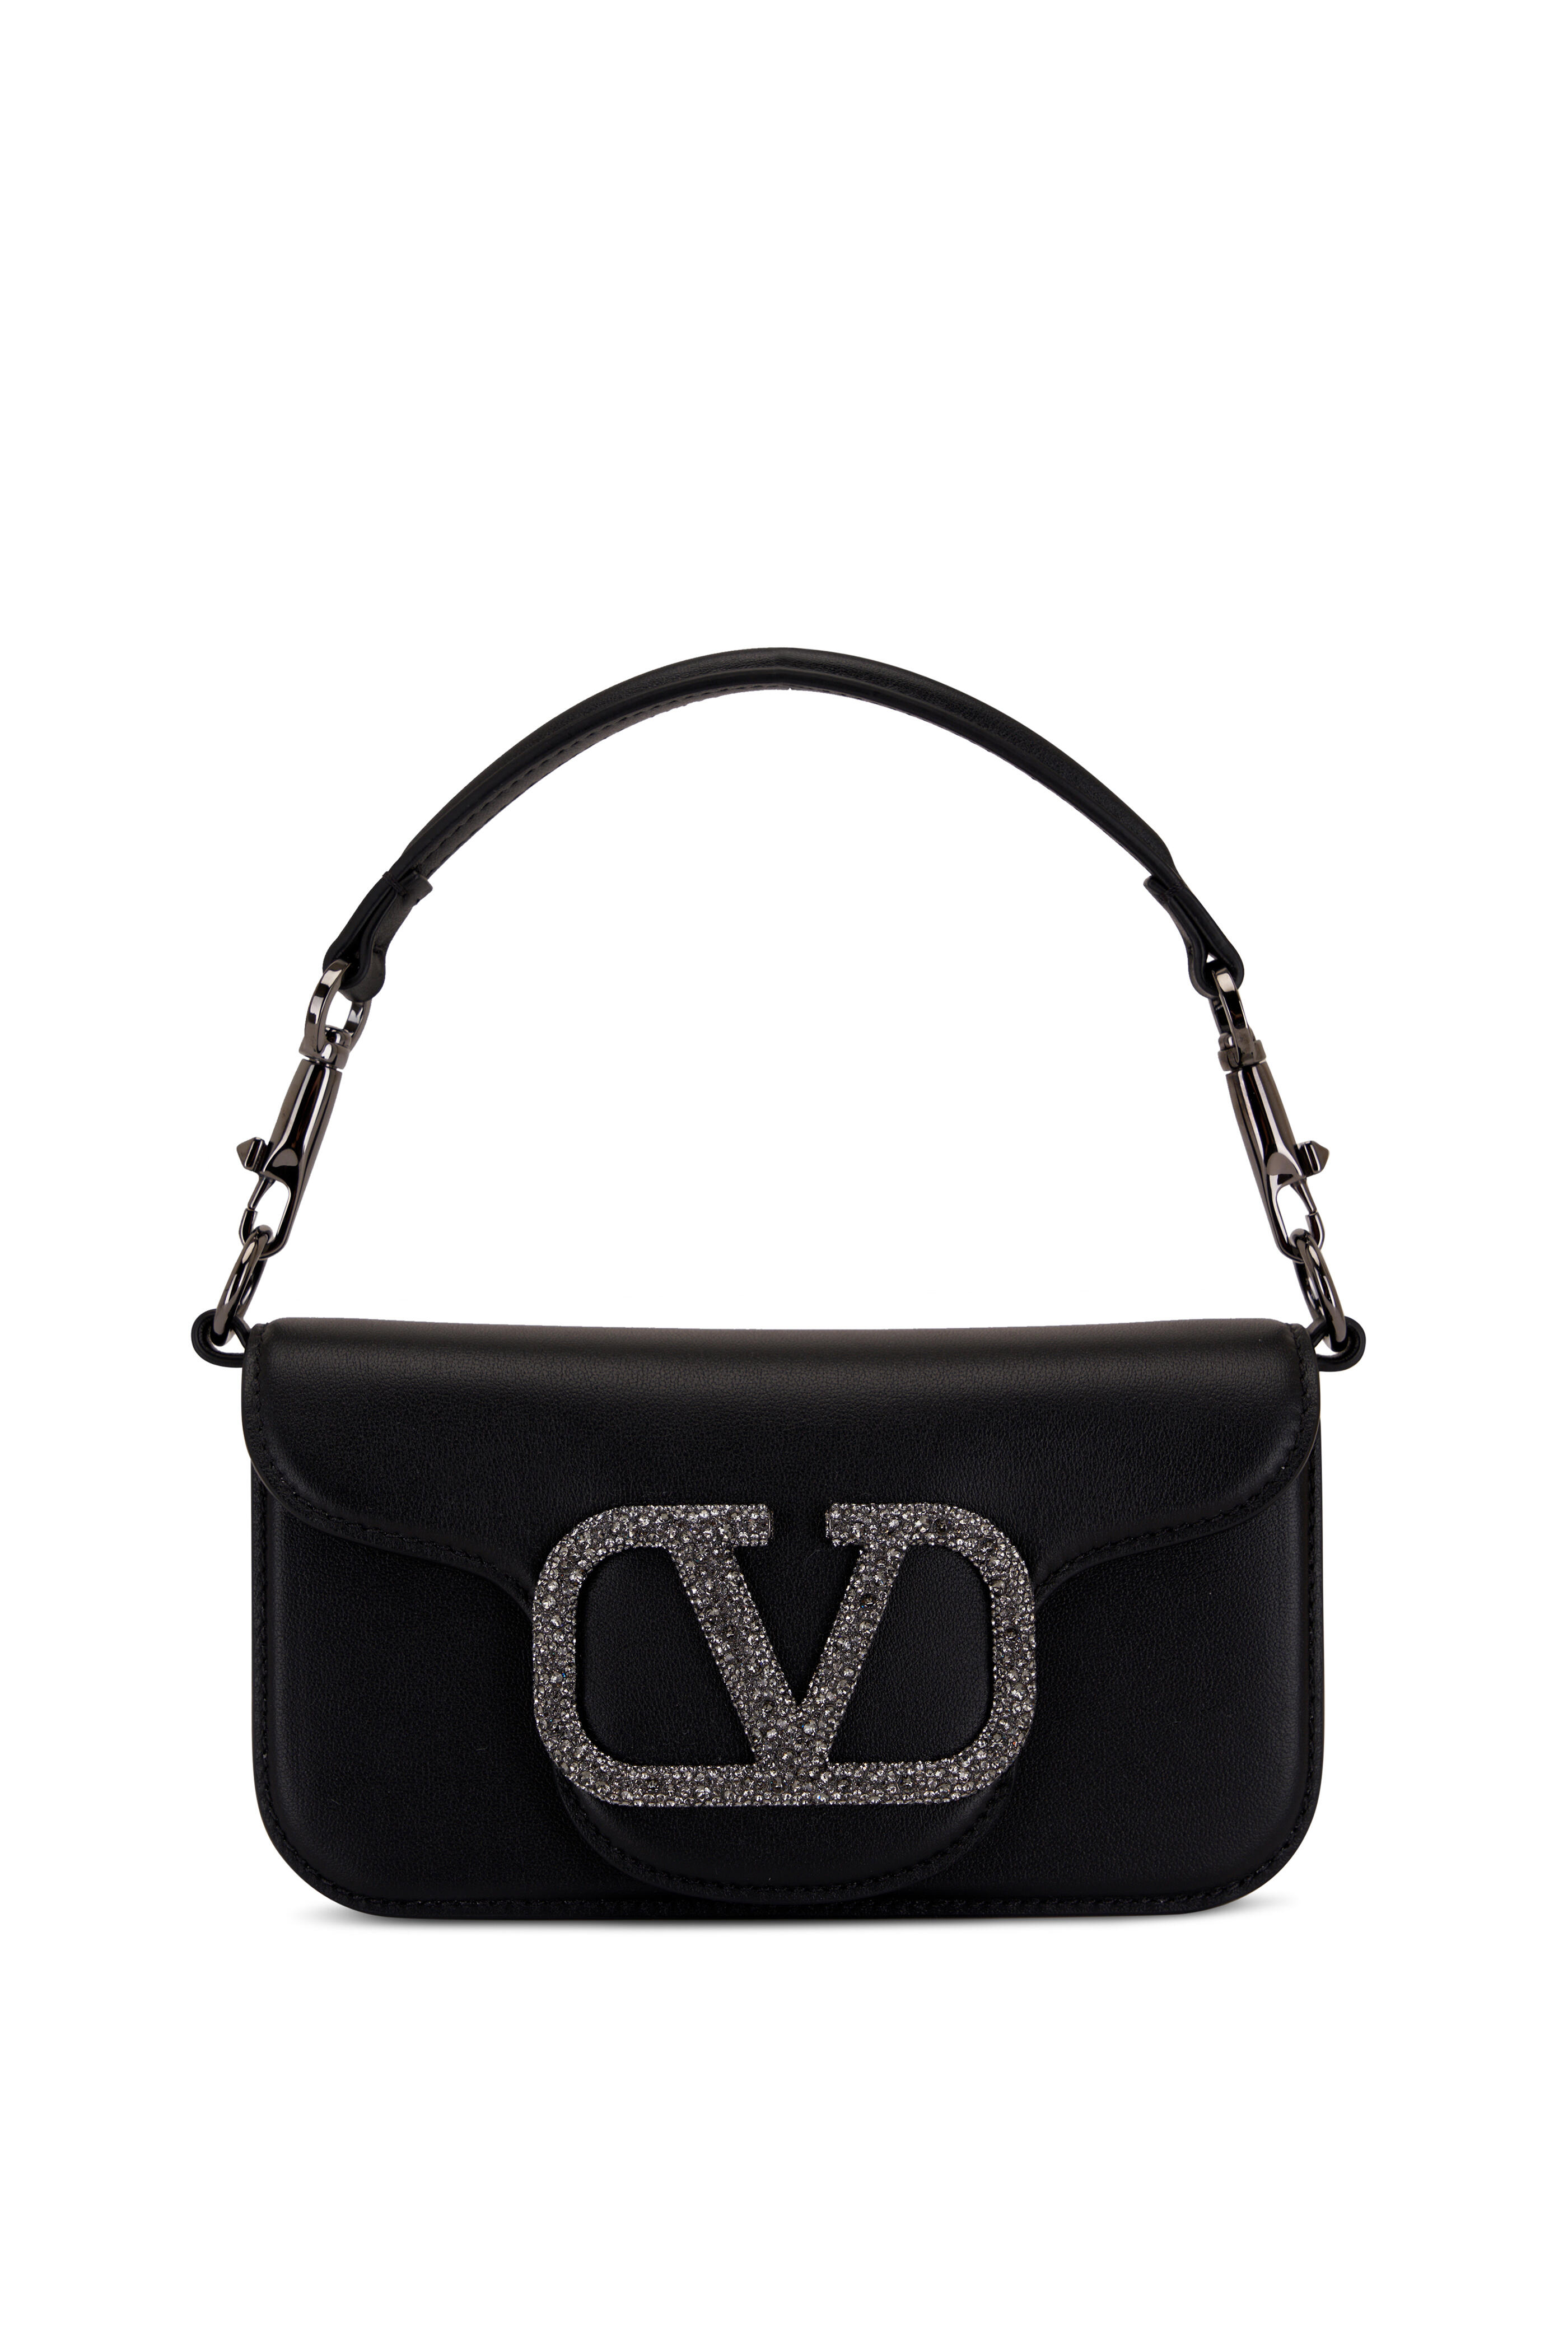 Valentino Black Leather Small Vsling Shoulder Bag